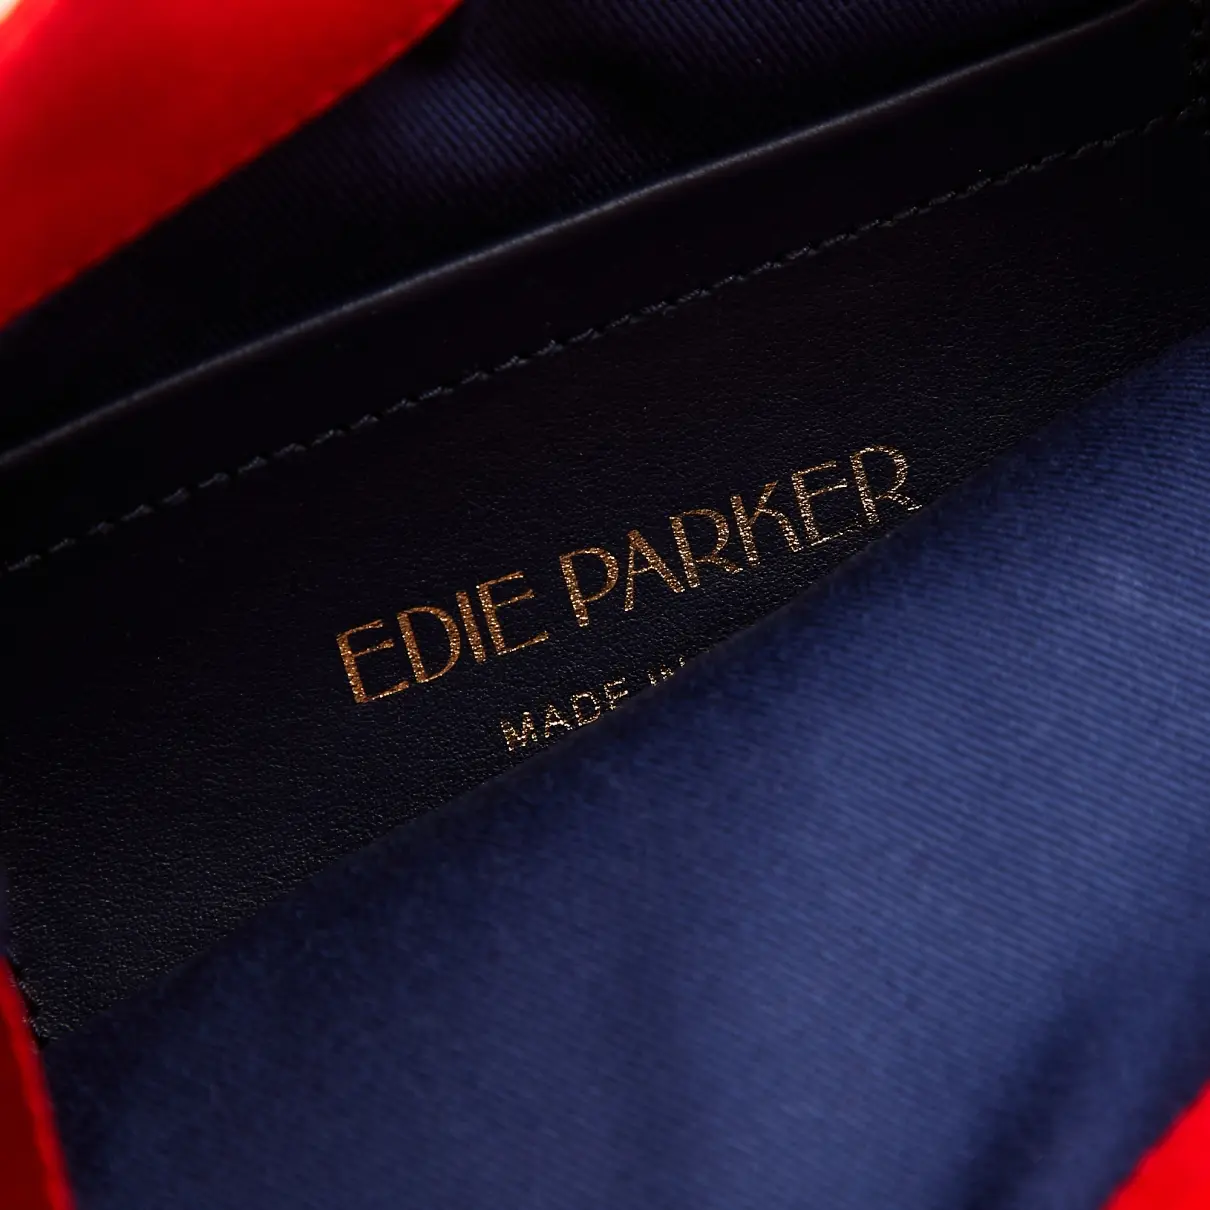 Cloth handbag Edie Parker